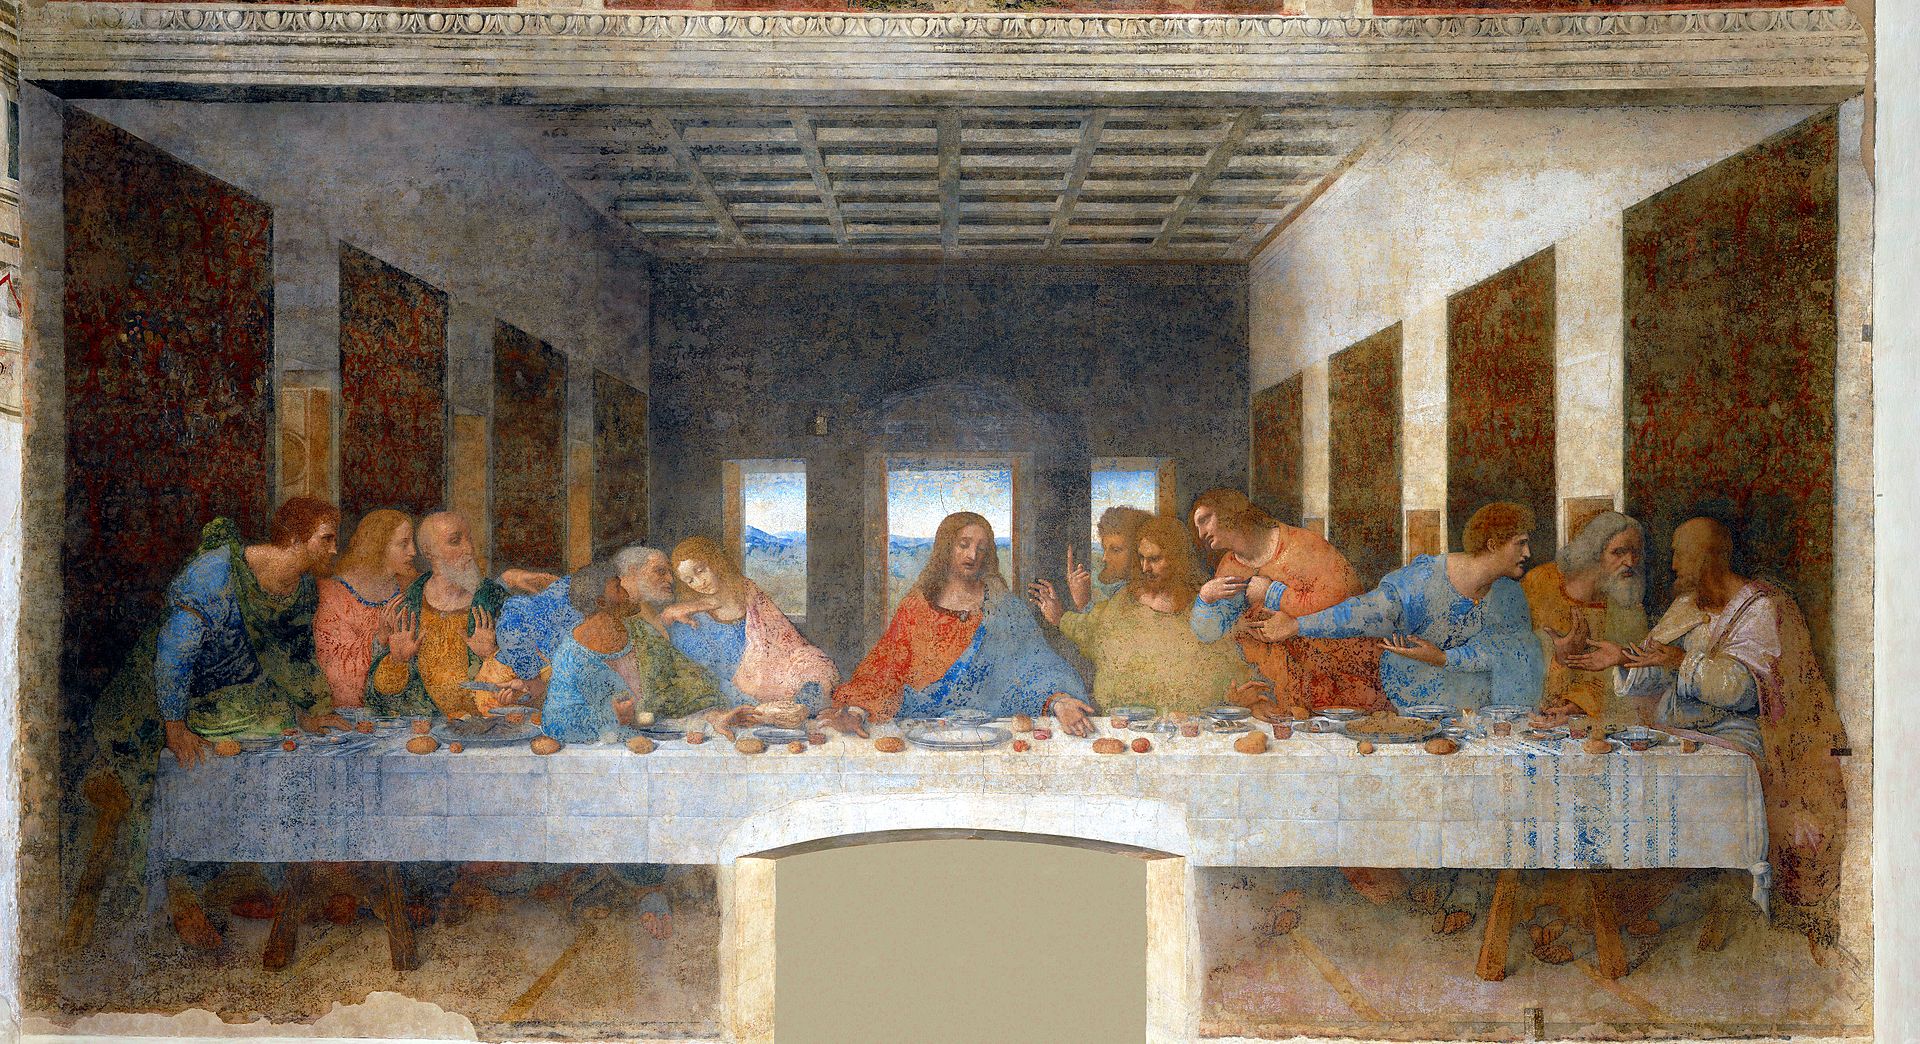 Lista de obras de Leonardo Da Vinci na Itália